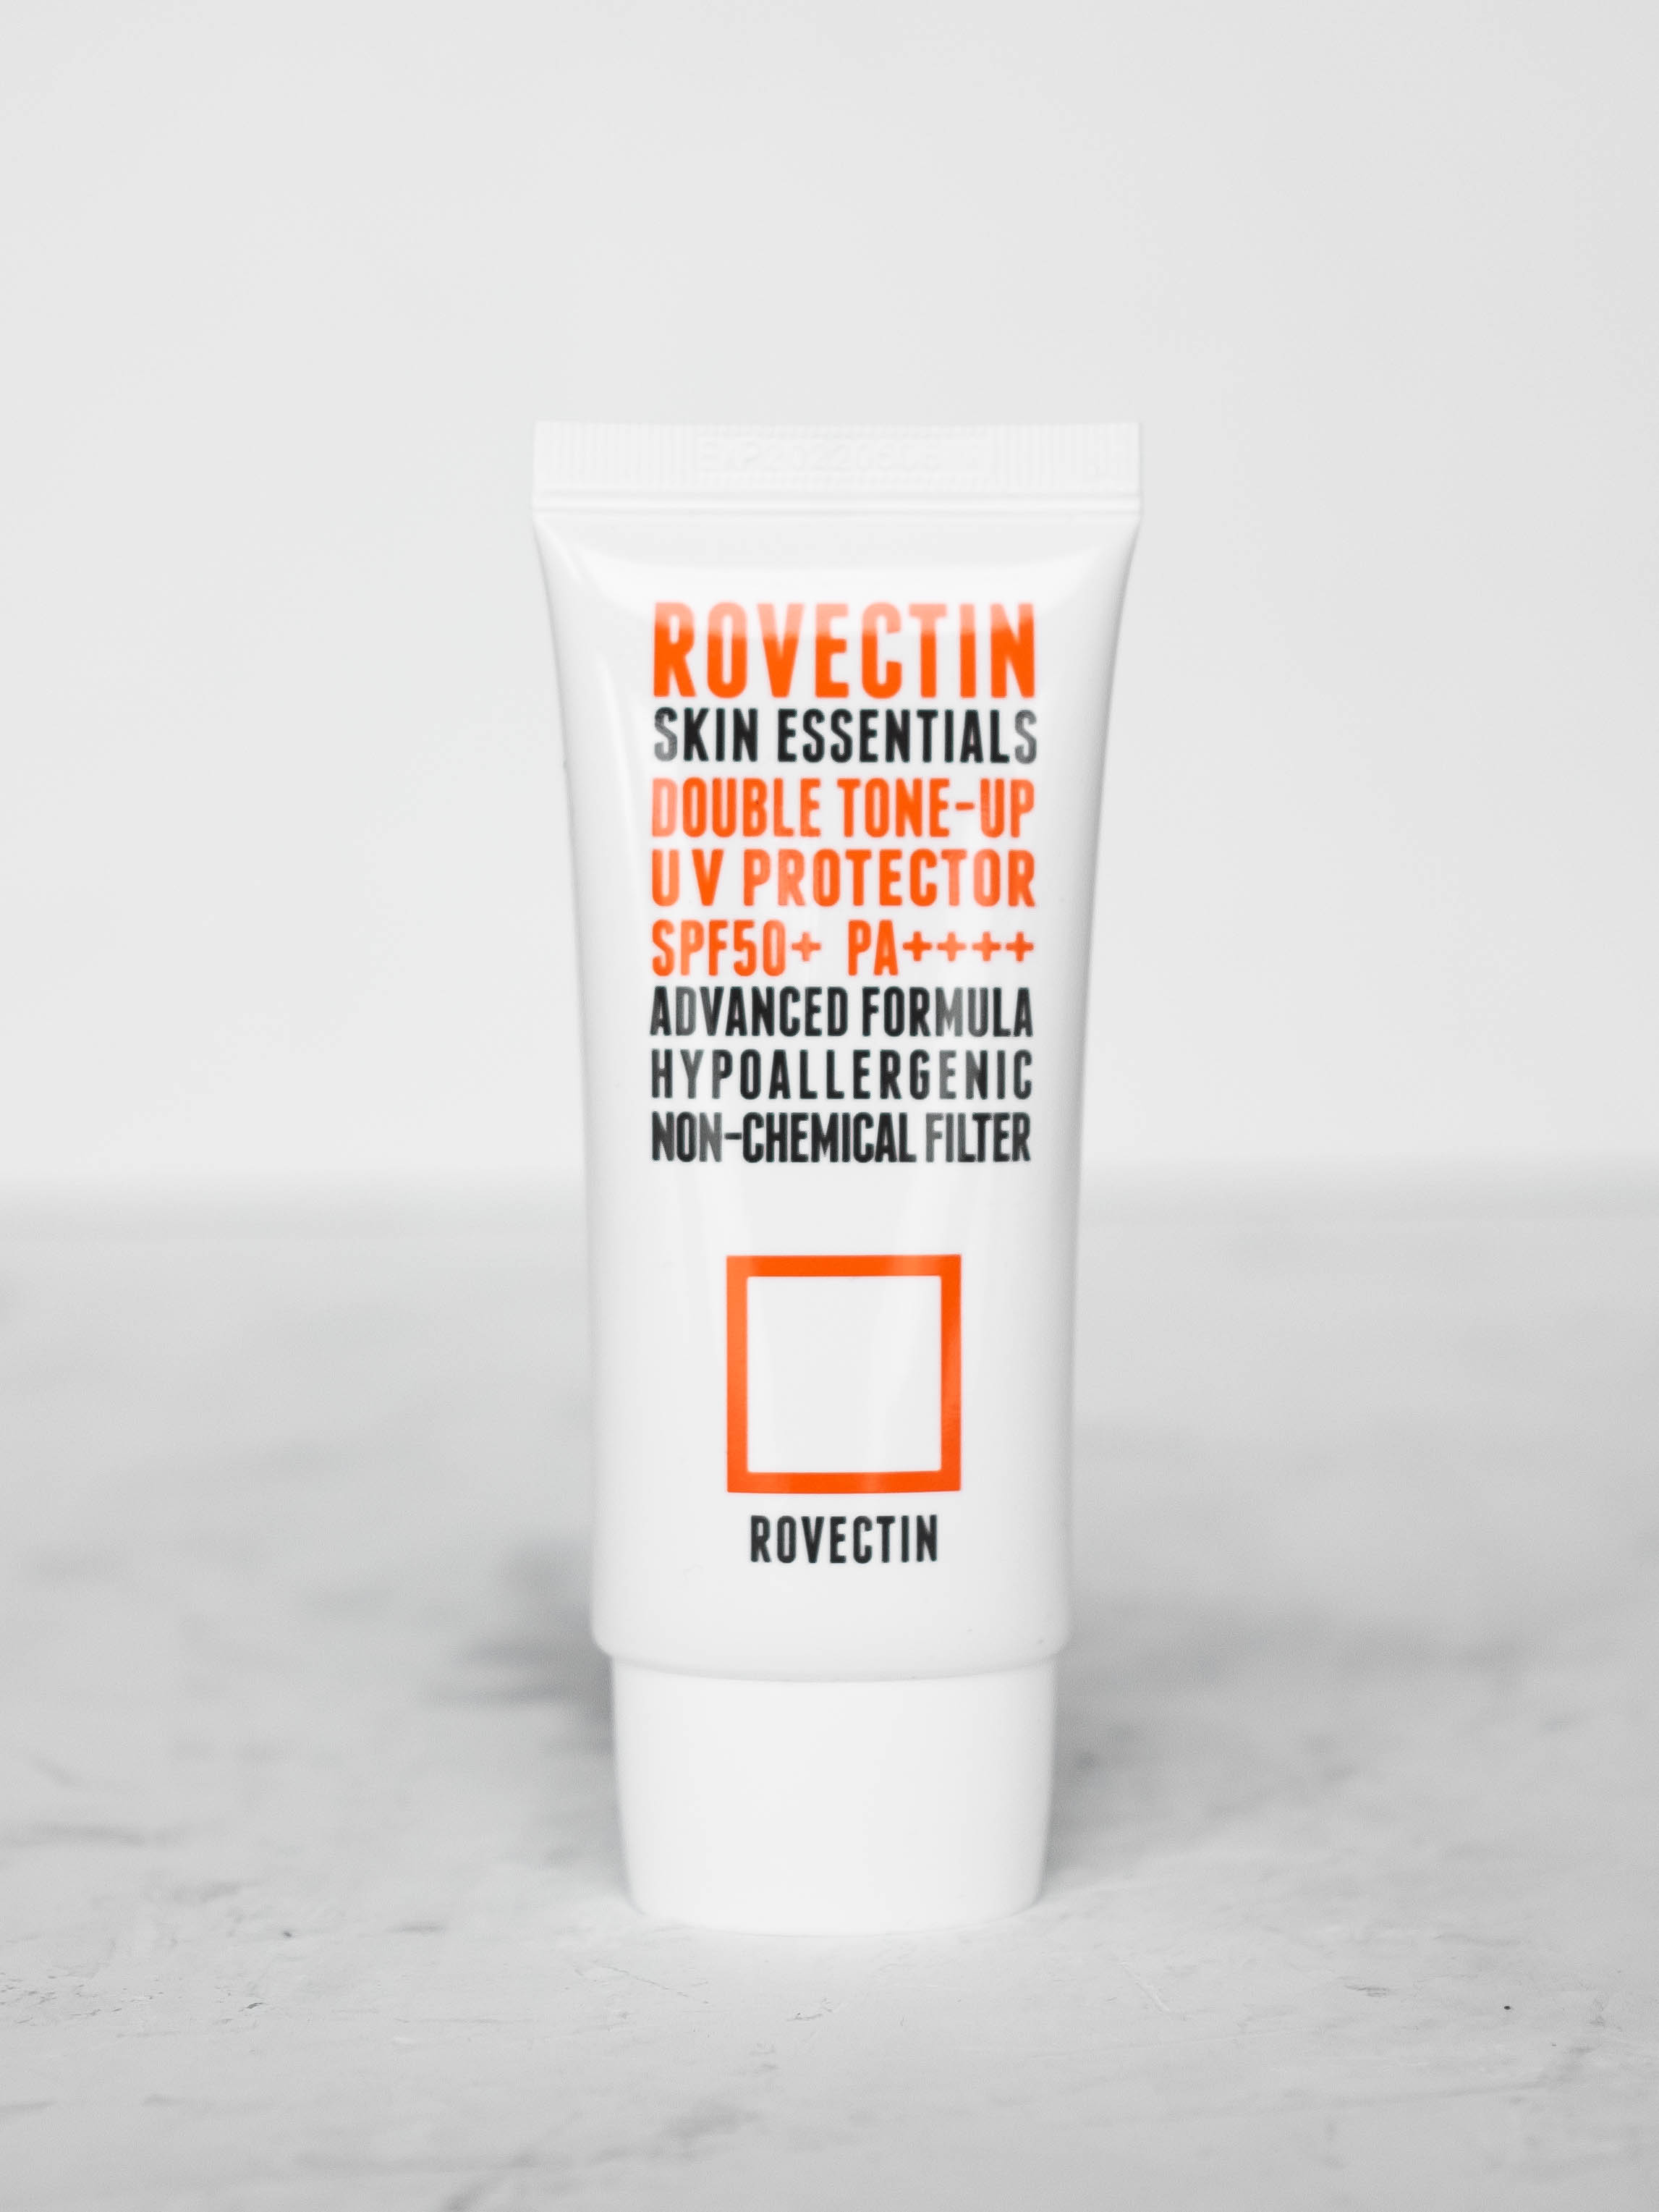 Санскрин на физических фильтрах для выравнивания тона с сатиновым финишем ROVECTIN Skin Essentials Double Tone-up UV Protector SPF50+PA++++ 50ml